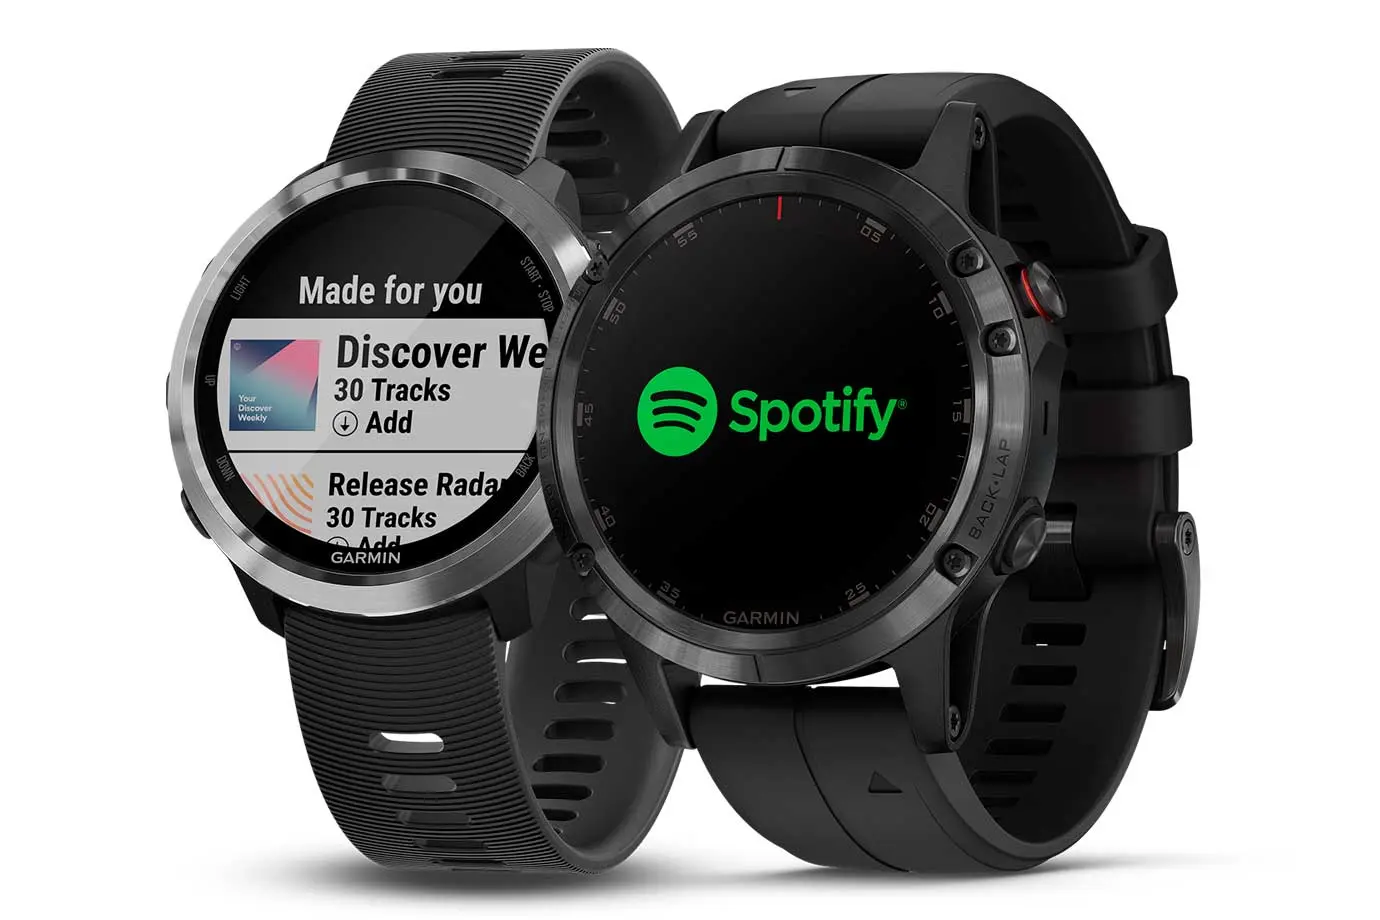 Los nuevos smartwatches de Garmin ahora cuentan con Spotify